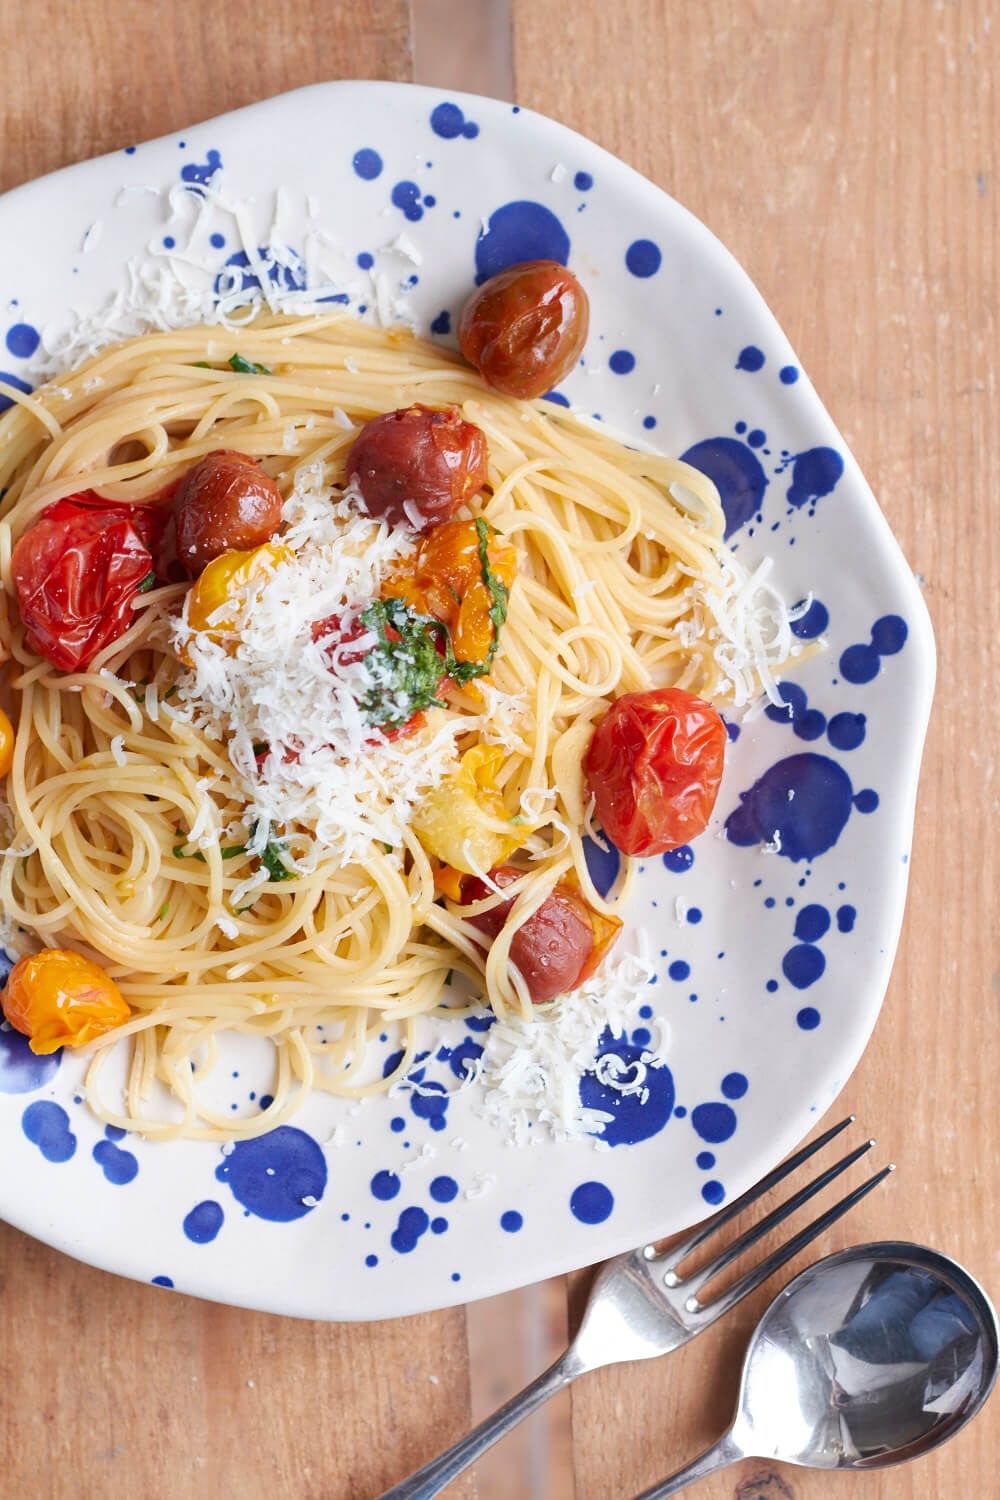 Alle Lieben Pasta und im Februar mit Tomaten! Bei Tastesheriff findet ihr ein leckeres Rezept für bunte Tomatenpasta mit Knoblauch und Basilikum.